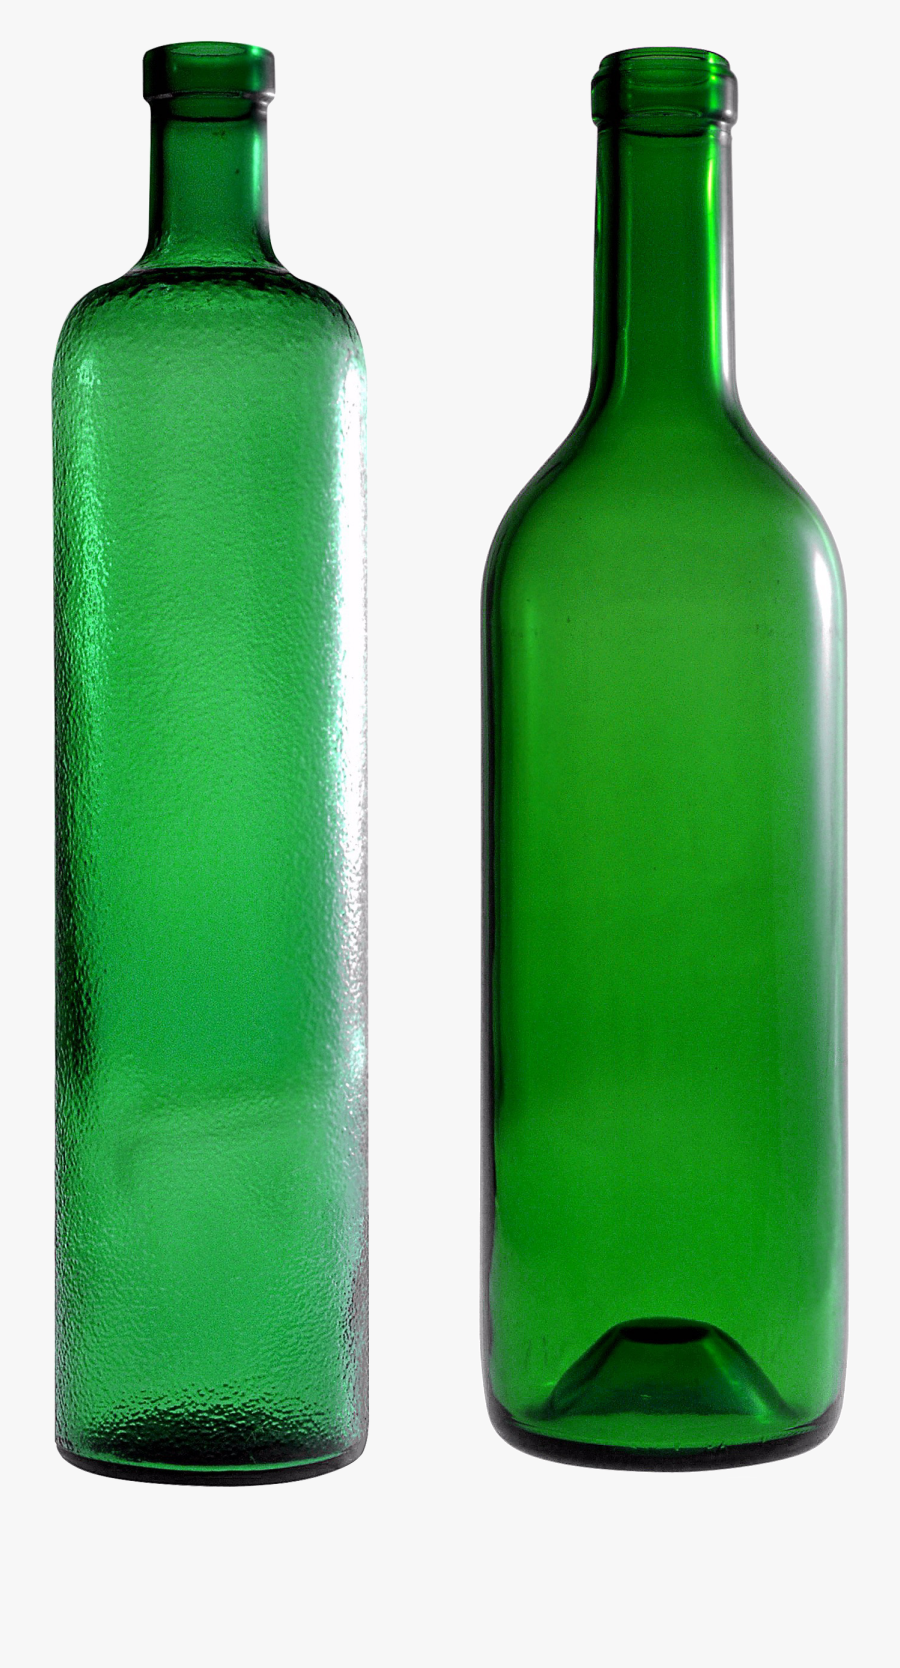 Empty Bottle - Empty Wine Bottles Png, Transparent Clipart